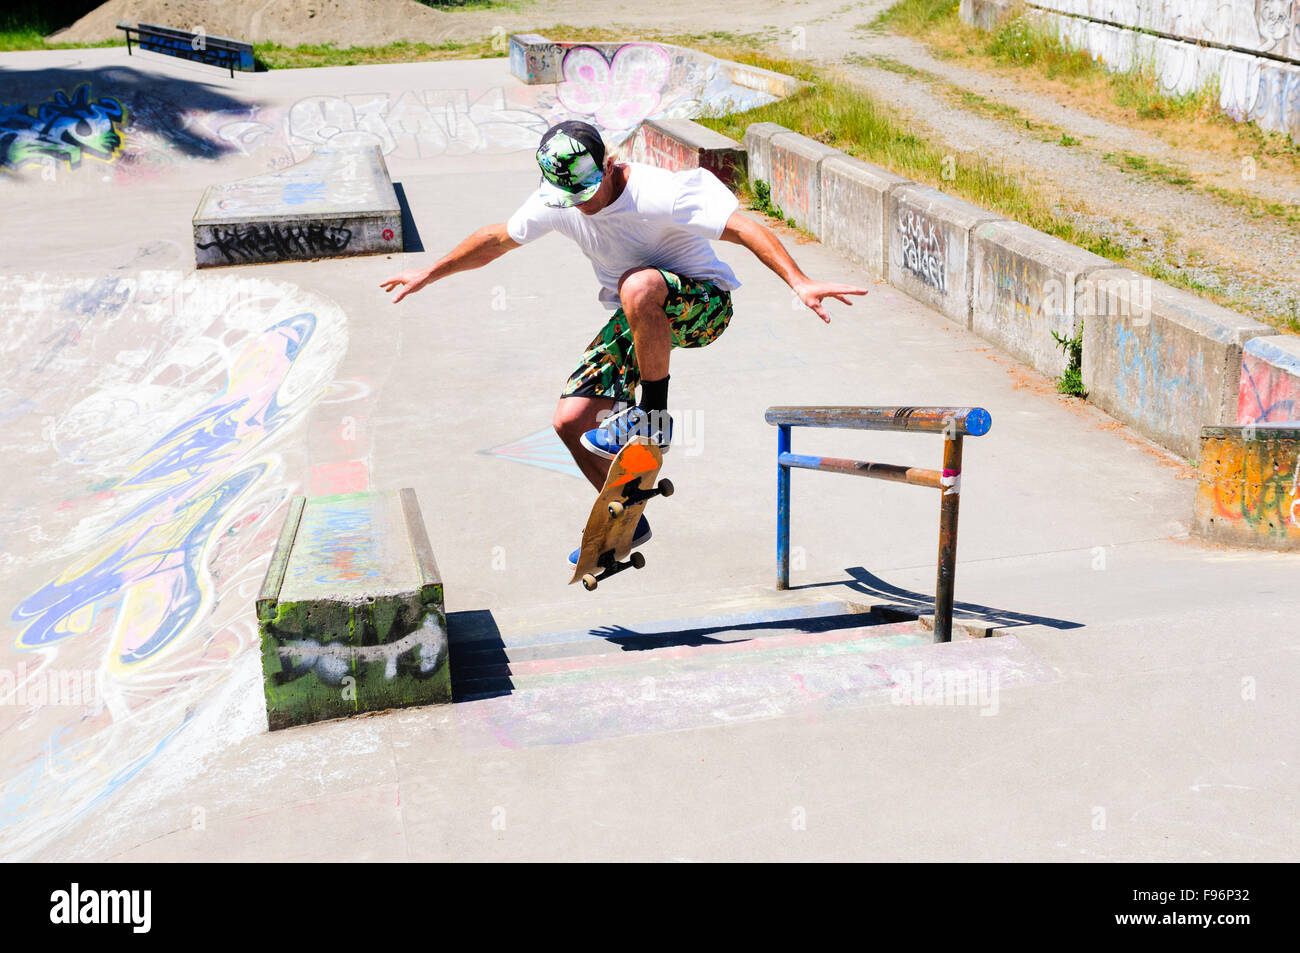 Ein Skateboarder Tricks auf seinem Skateboard zu tun. Stockfoto